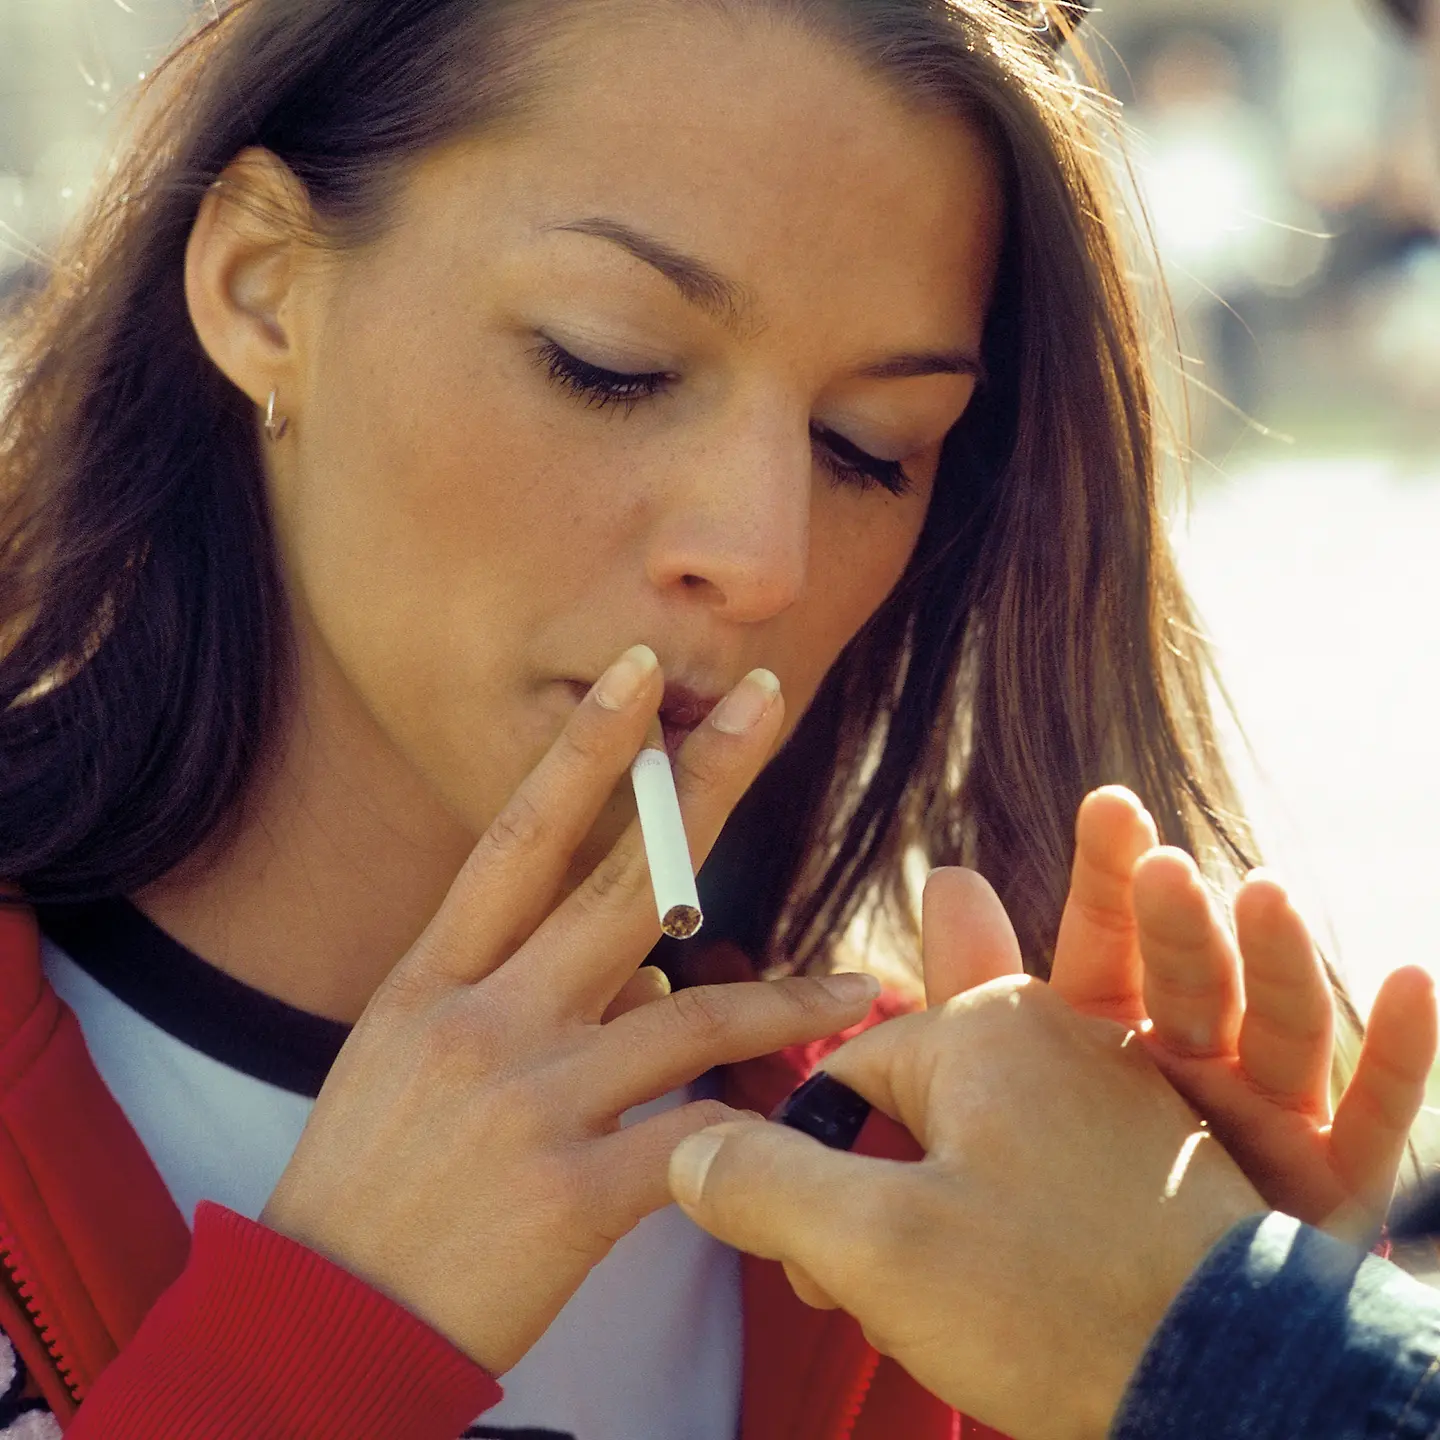 Eine junge Frau lässt sich Feuer für ihre Zigarette geben